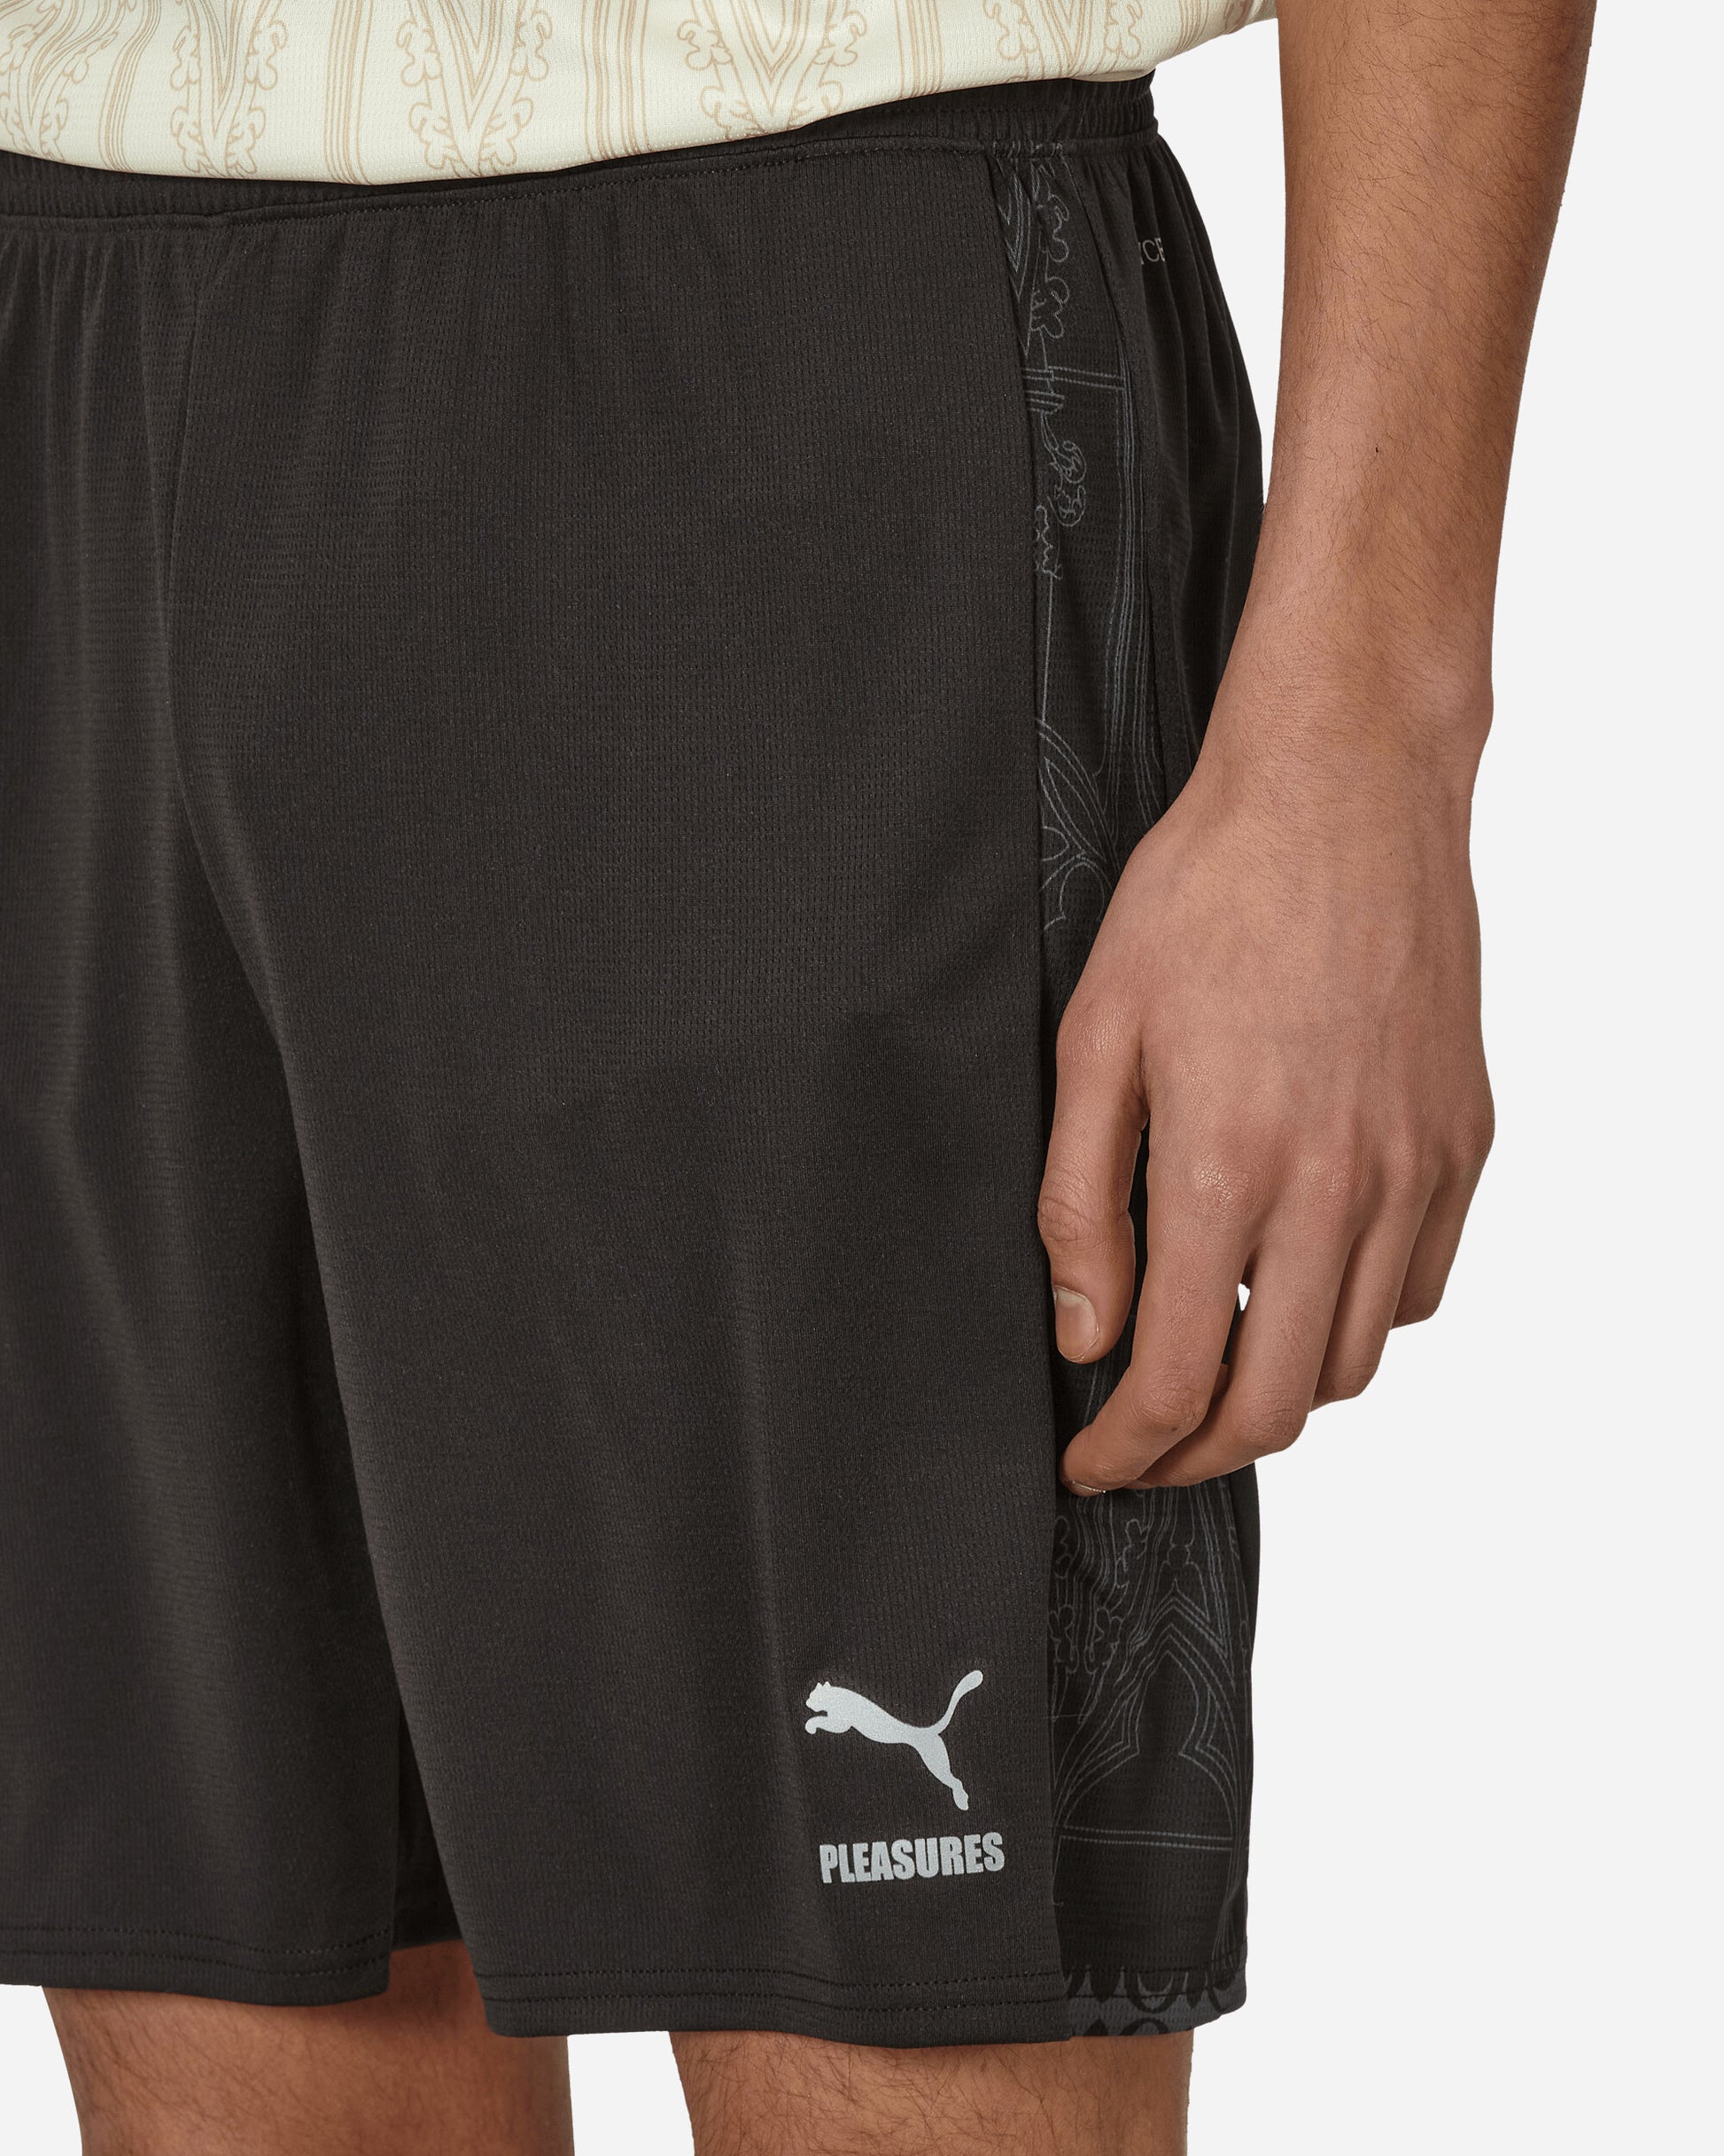 Puma Acm X Pleasures Shorts Replica Puma Black/Asphalt Shorts Short 776090-01